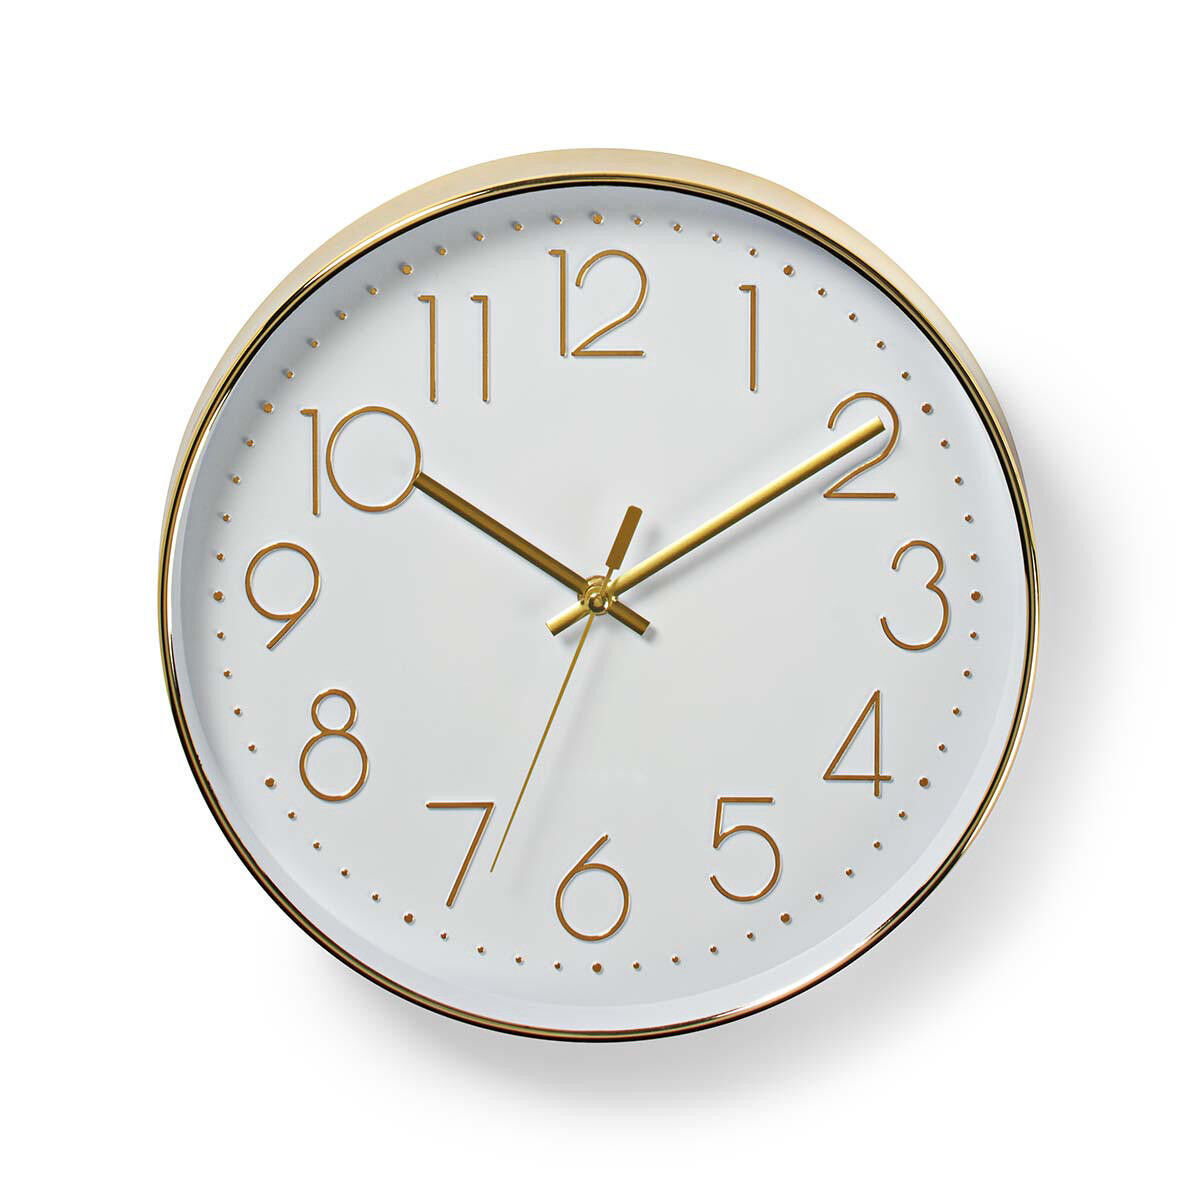 19 15 30 часов. Часы круглые. Часы настенные "Silber". Часы белый мрамор круглые настенные диаметр 29см.